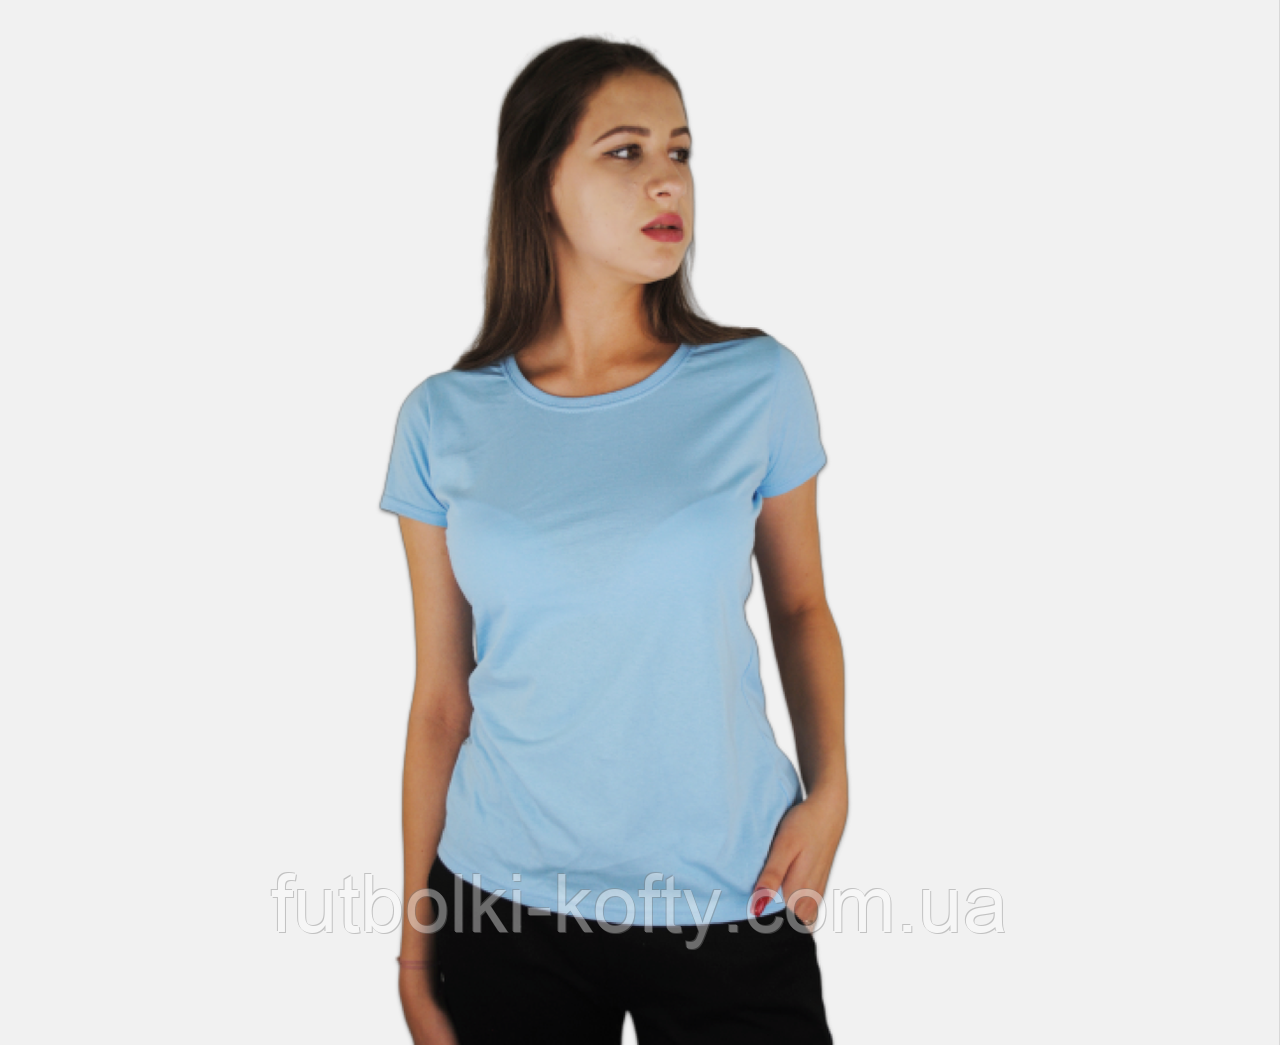 Жіноча футболка Небесно-блакитна Класична Fruit of the loom 61-372-YT S